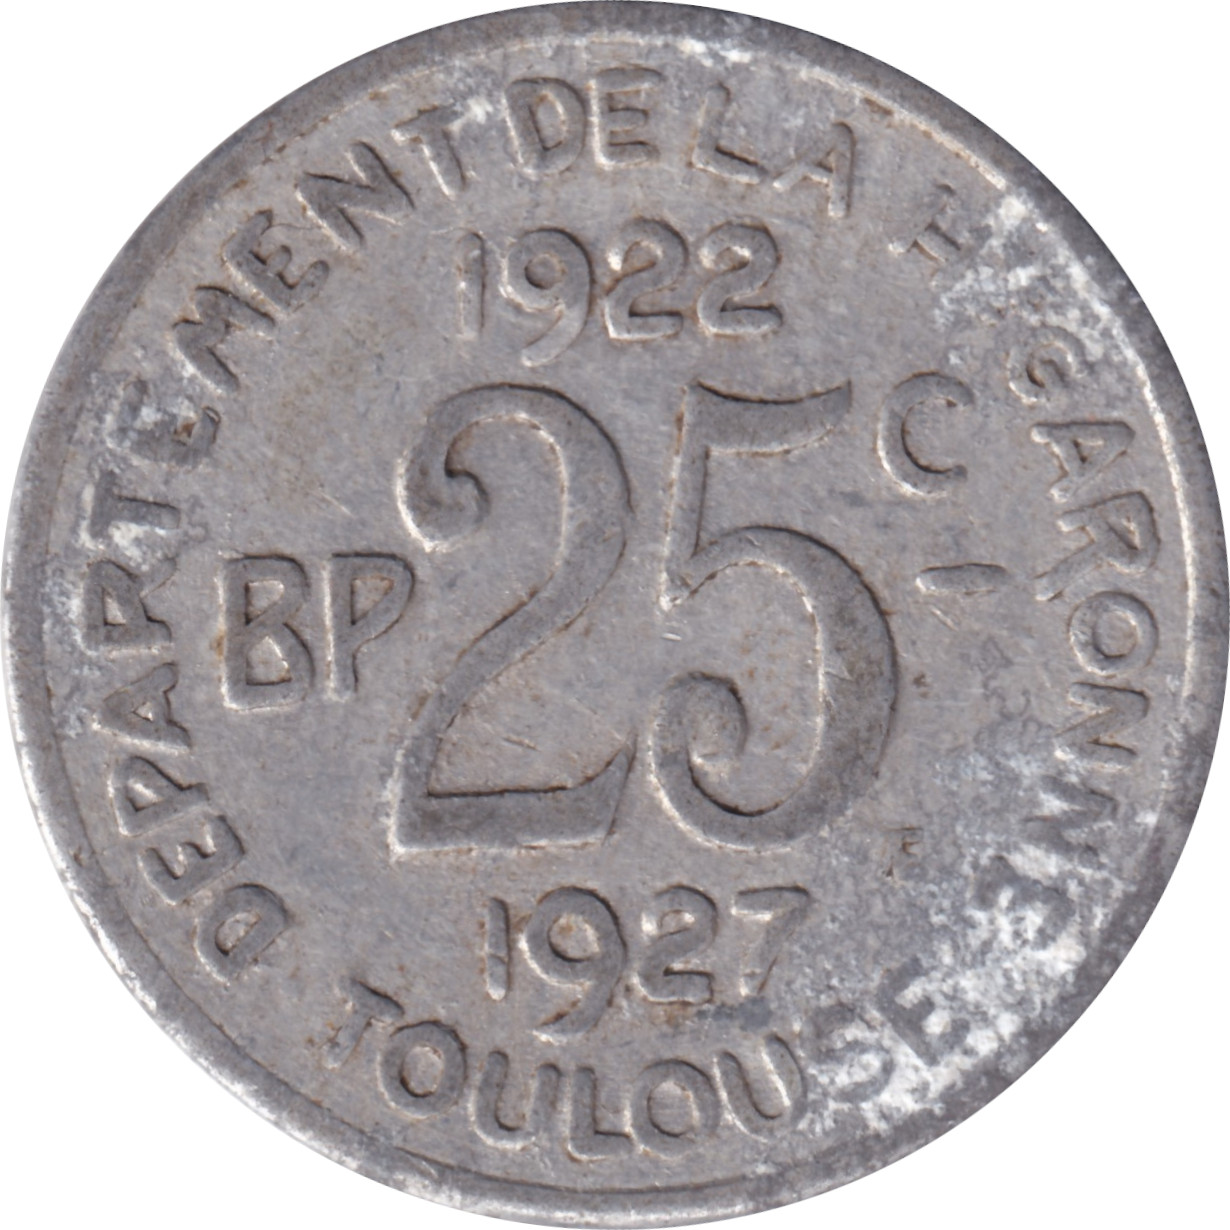 25 centimes - Toulouse - Comité régional